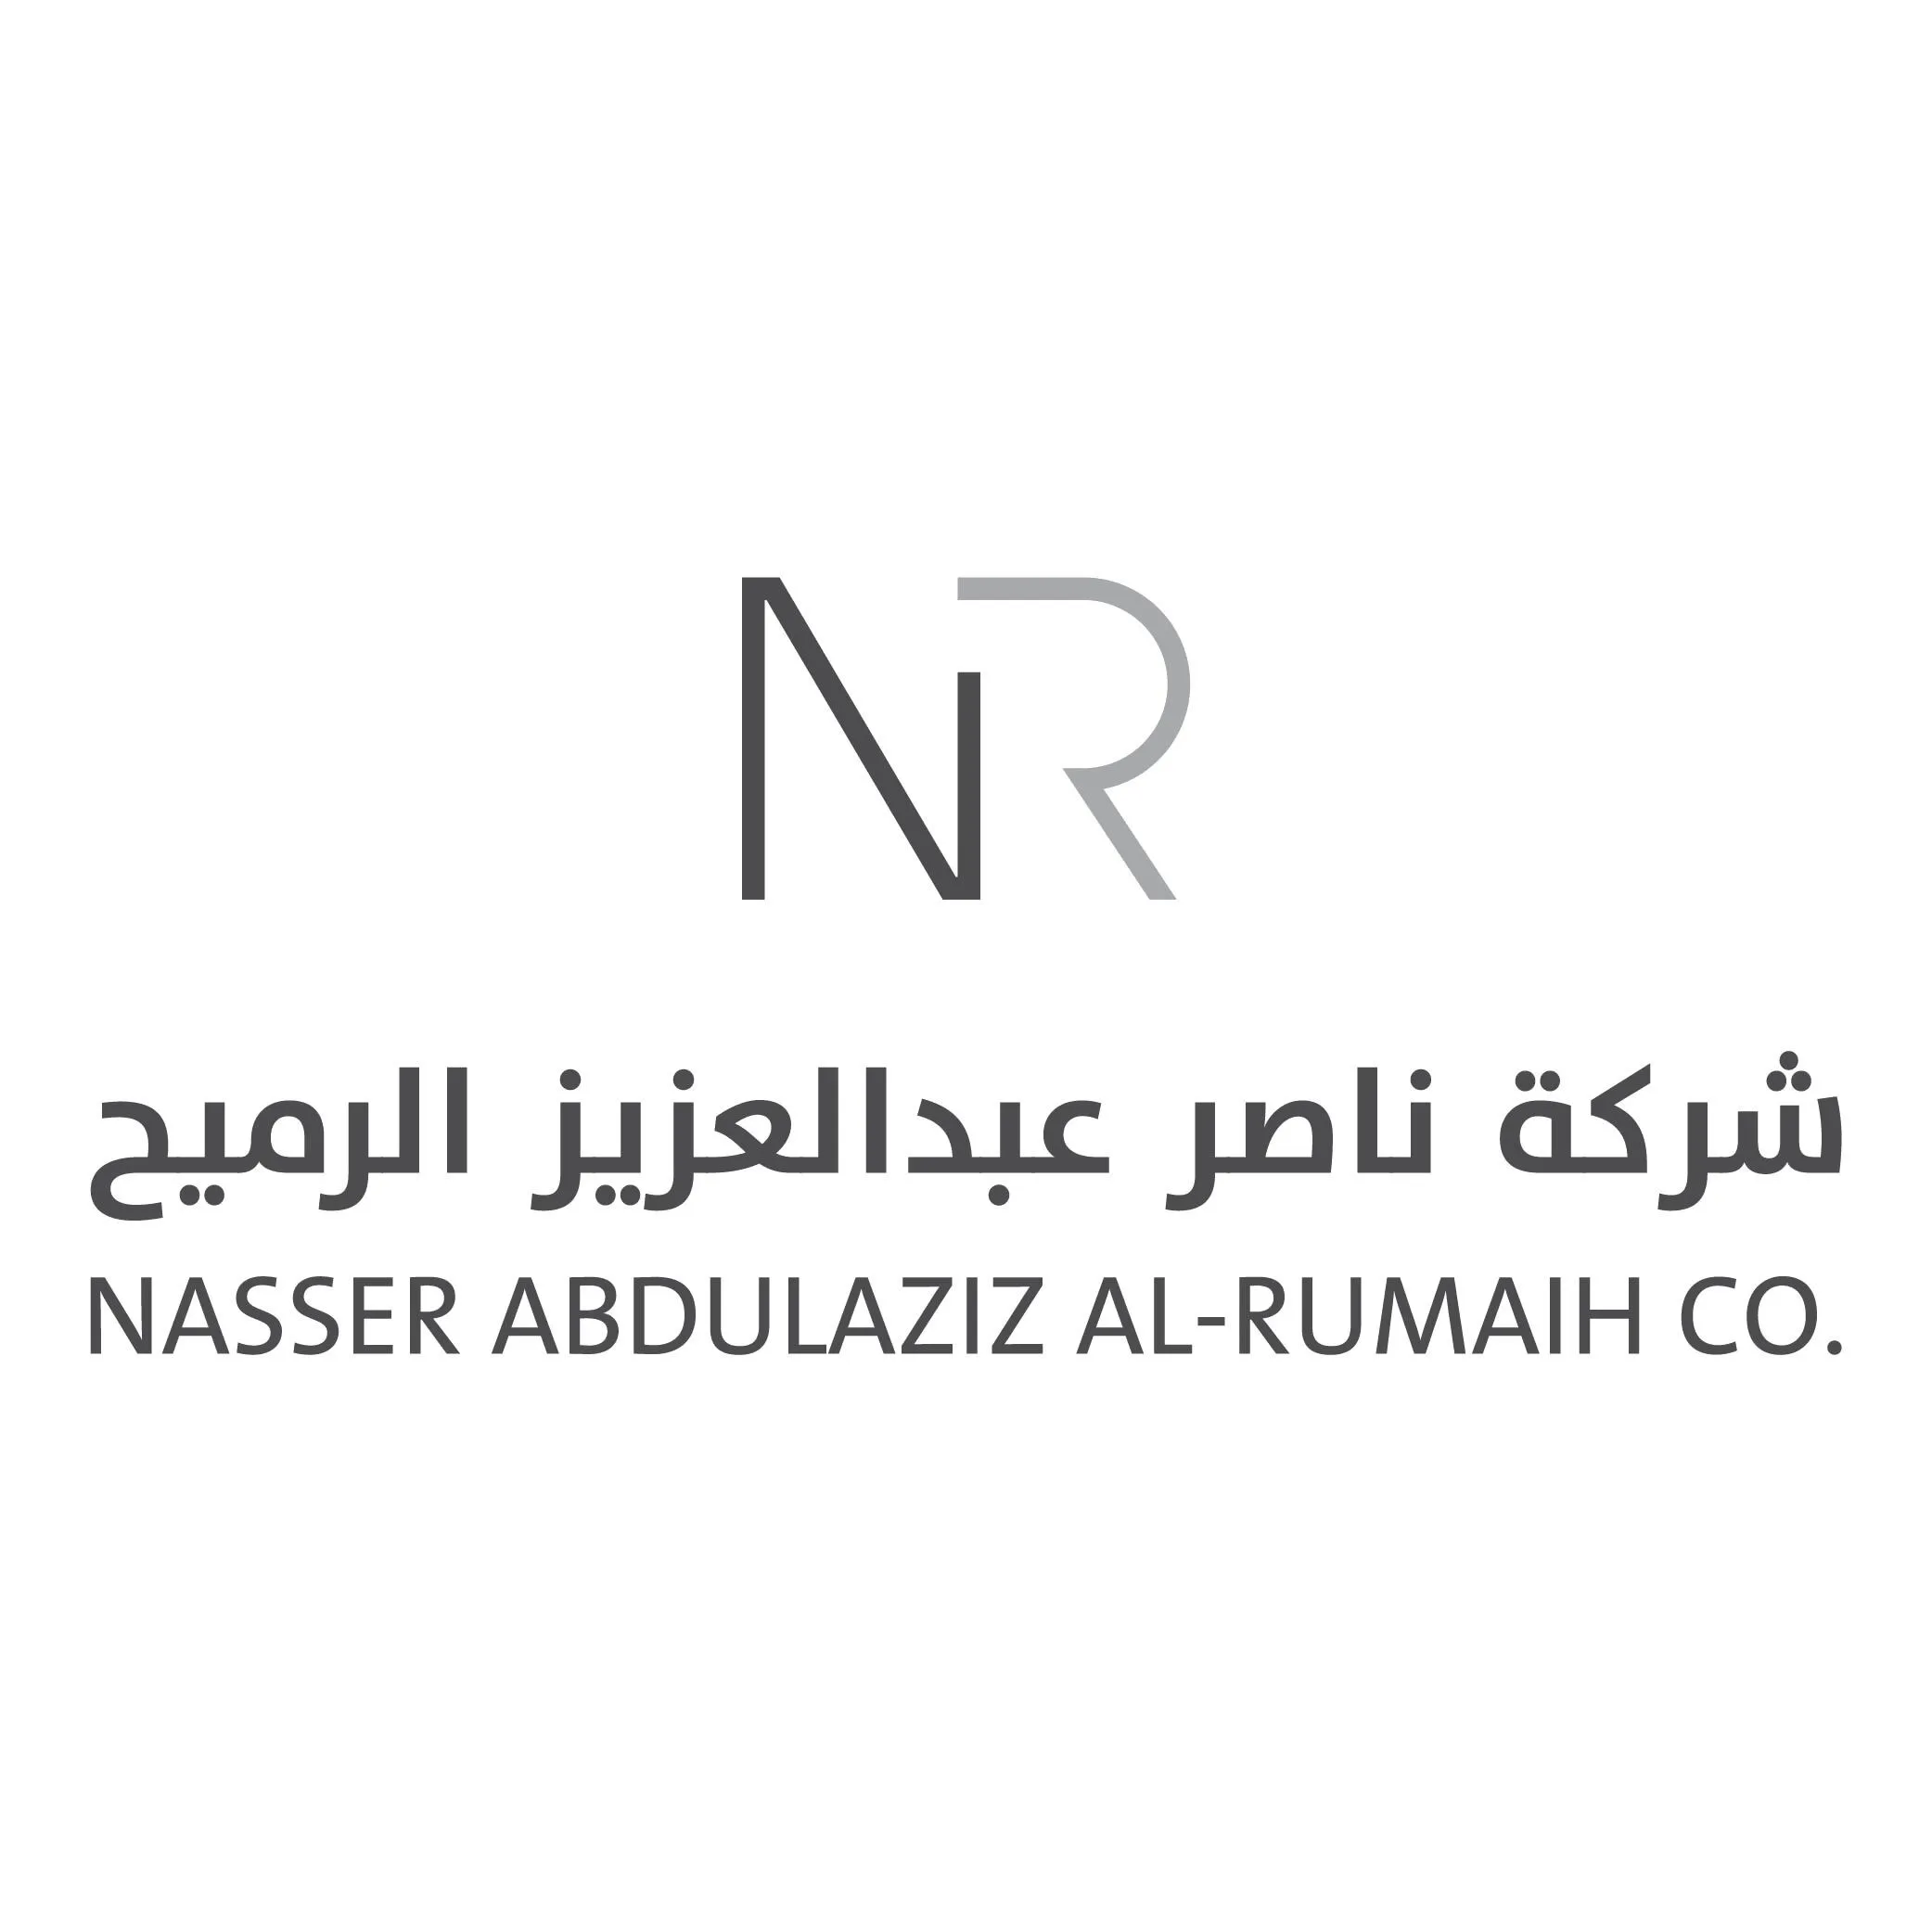 تمويل لشراء الأثاث من شركة ناصر عبدالعزيز الرميح